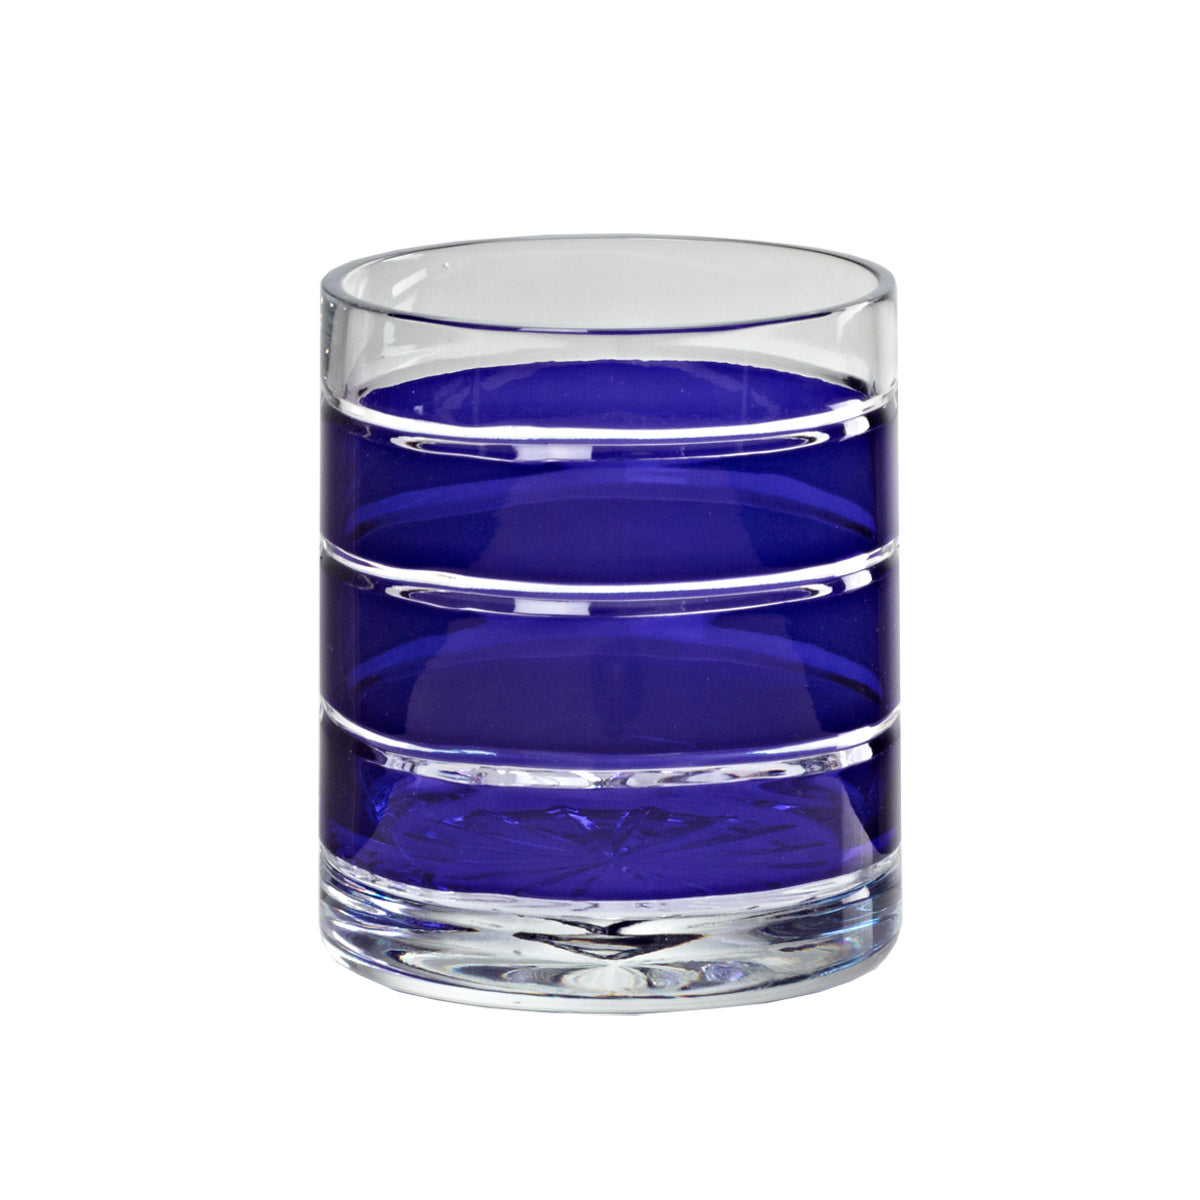 Whiskyglas Whiskybecher Trinkbecher Handgeschliffen Blau Kristall Glas 280 ml